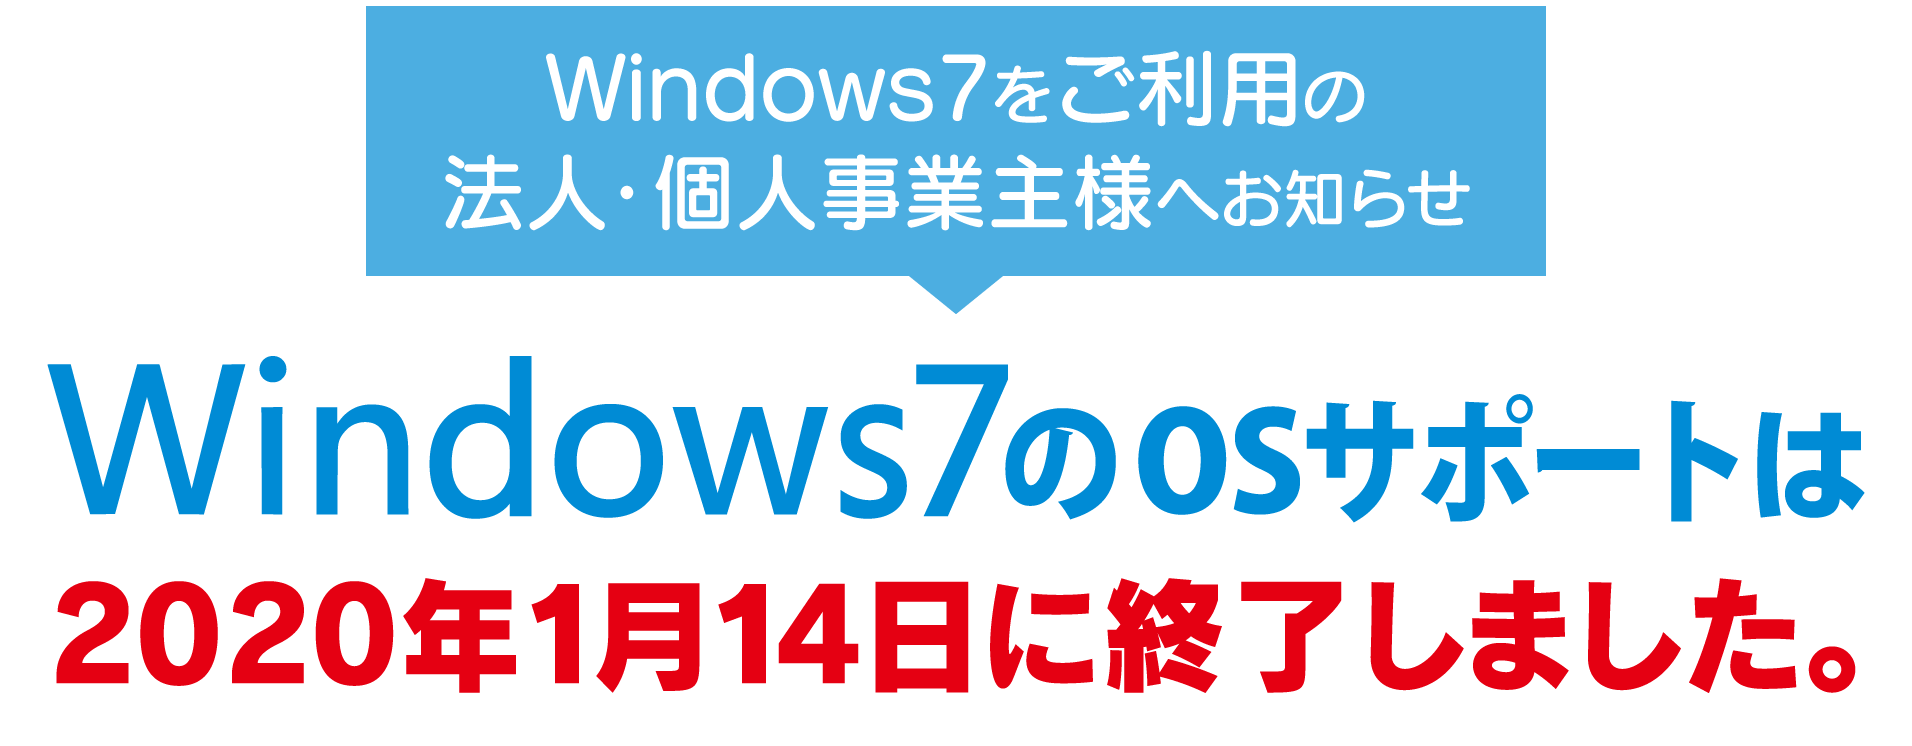 Windows7をご利用の法人・個人事業主様へお知らせ Windows7のOSサポートは2020年1月14日で終了しました。